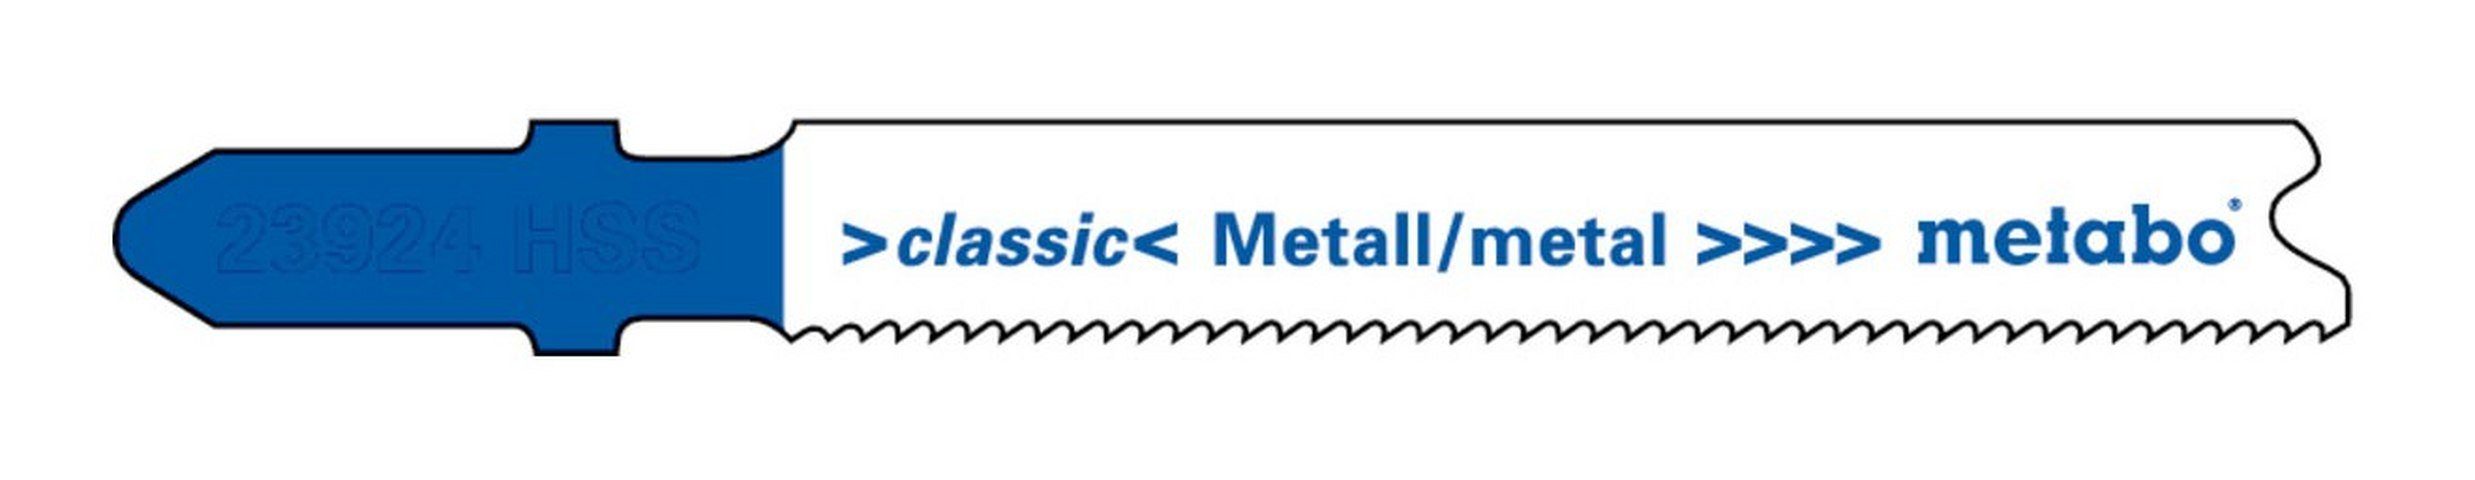 metabo Stichsägeblatt (5 Stück), Metall Serie classic 66 / 1,1-1,5 mm progressiv HSS mit Eintauchspitze